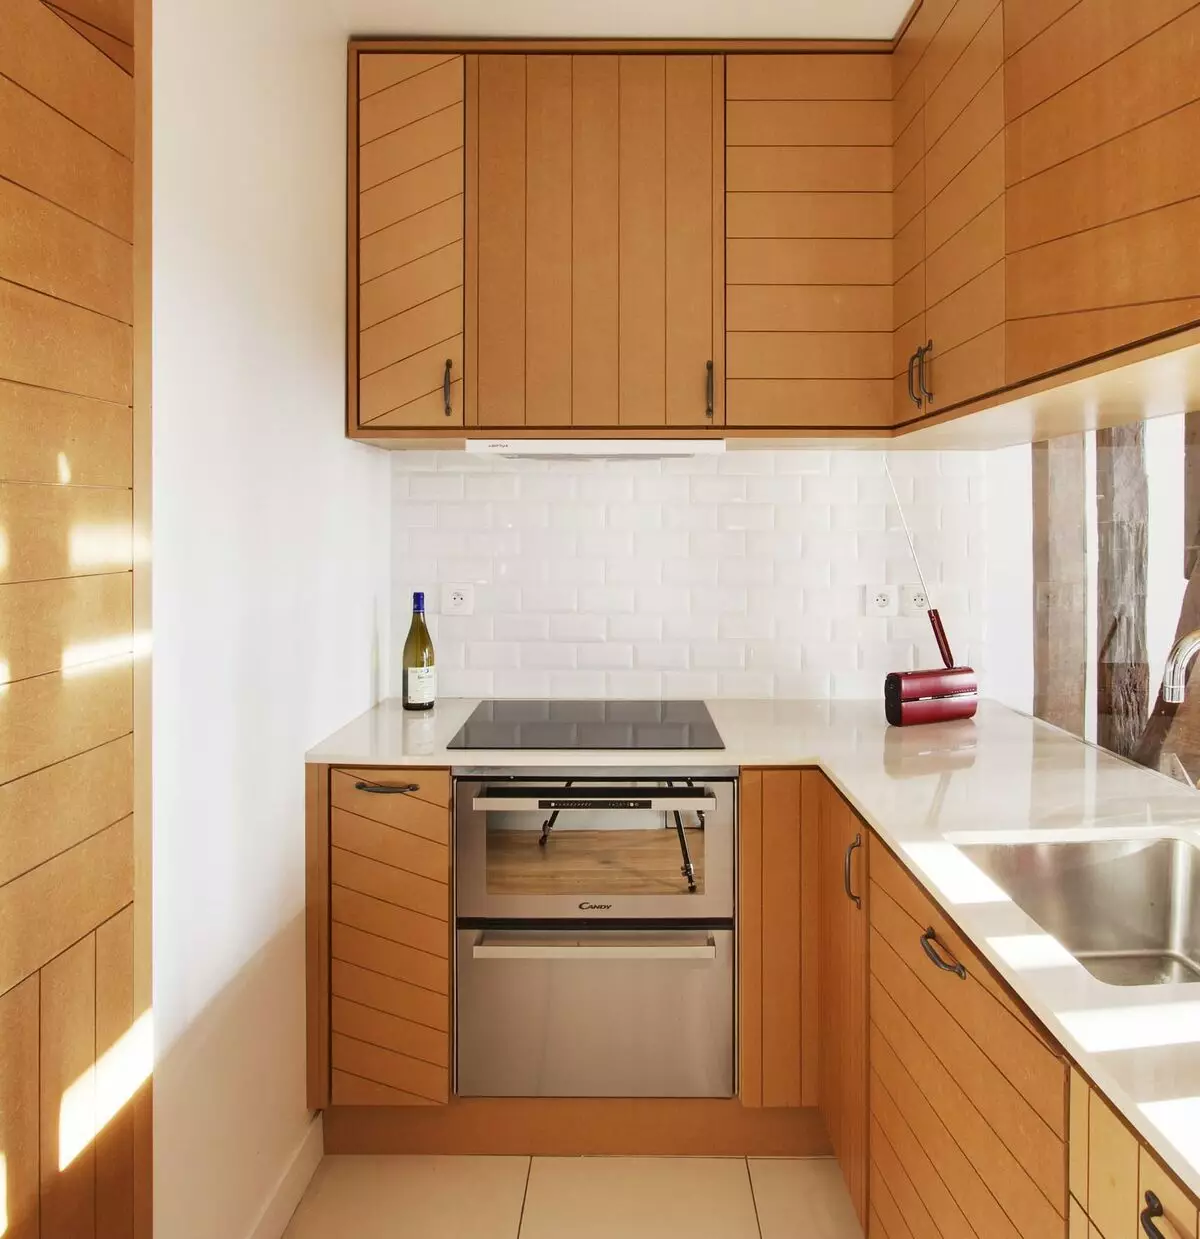 5 kvadratkök design. M (100 bilder): reparation i köket 5 kvadratmeter, köksuppsättning och andra möbler, idéer planering för litet kök 9454_51